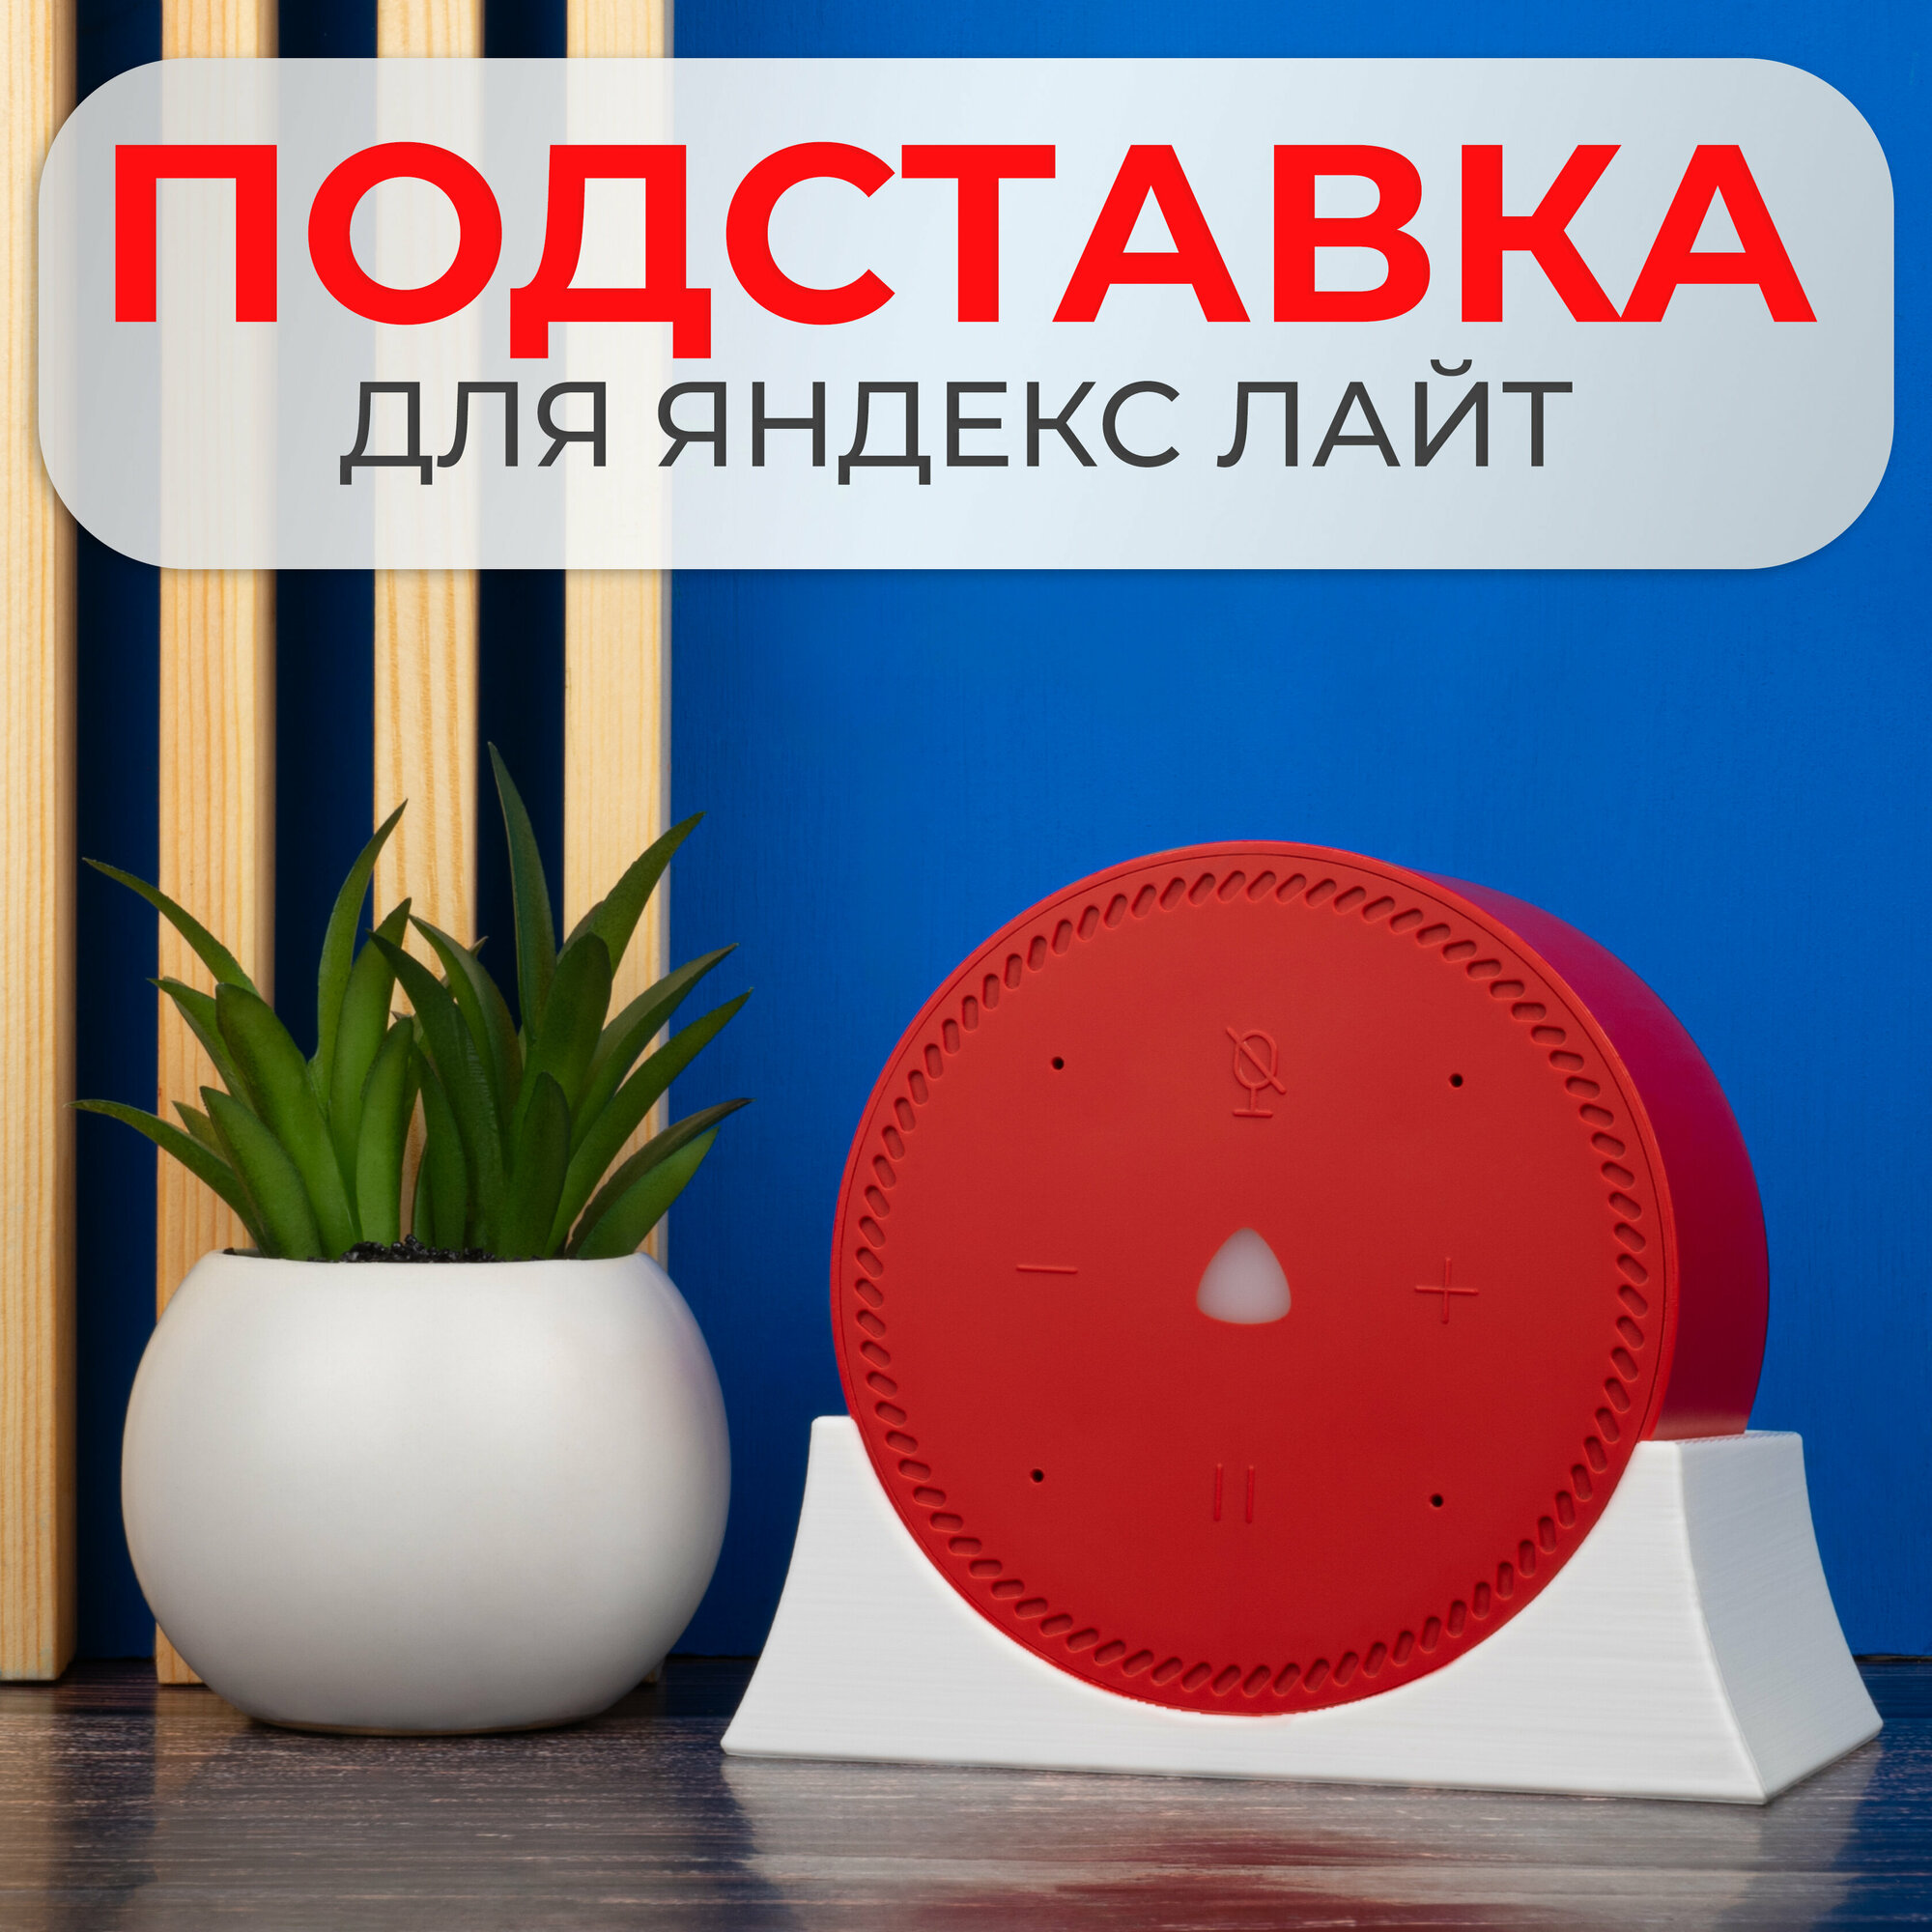 Крепление подставка для Яндекс Станции Лайт